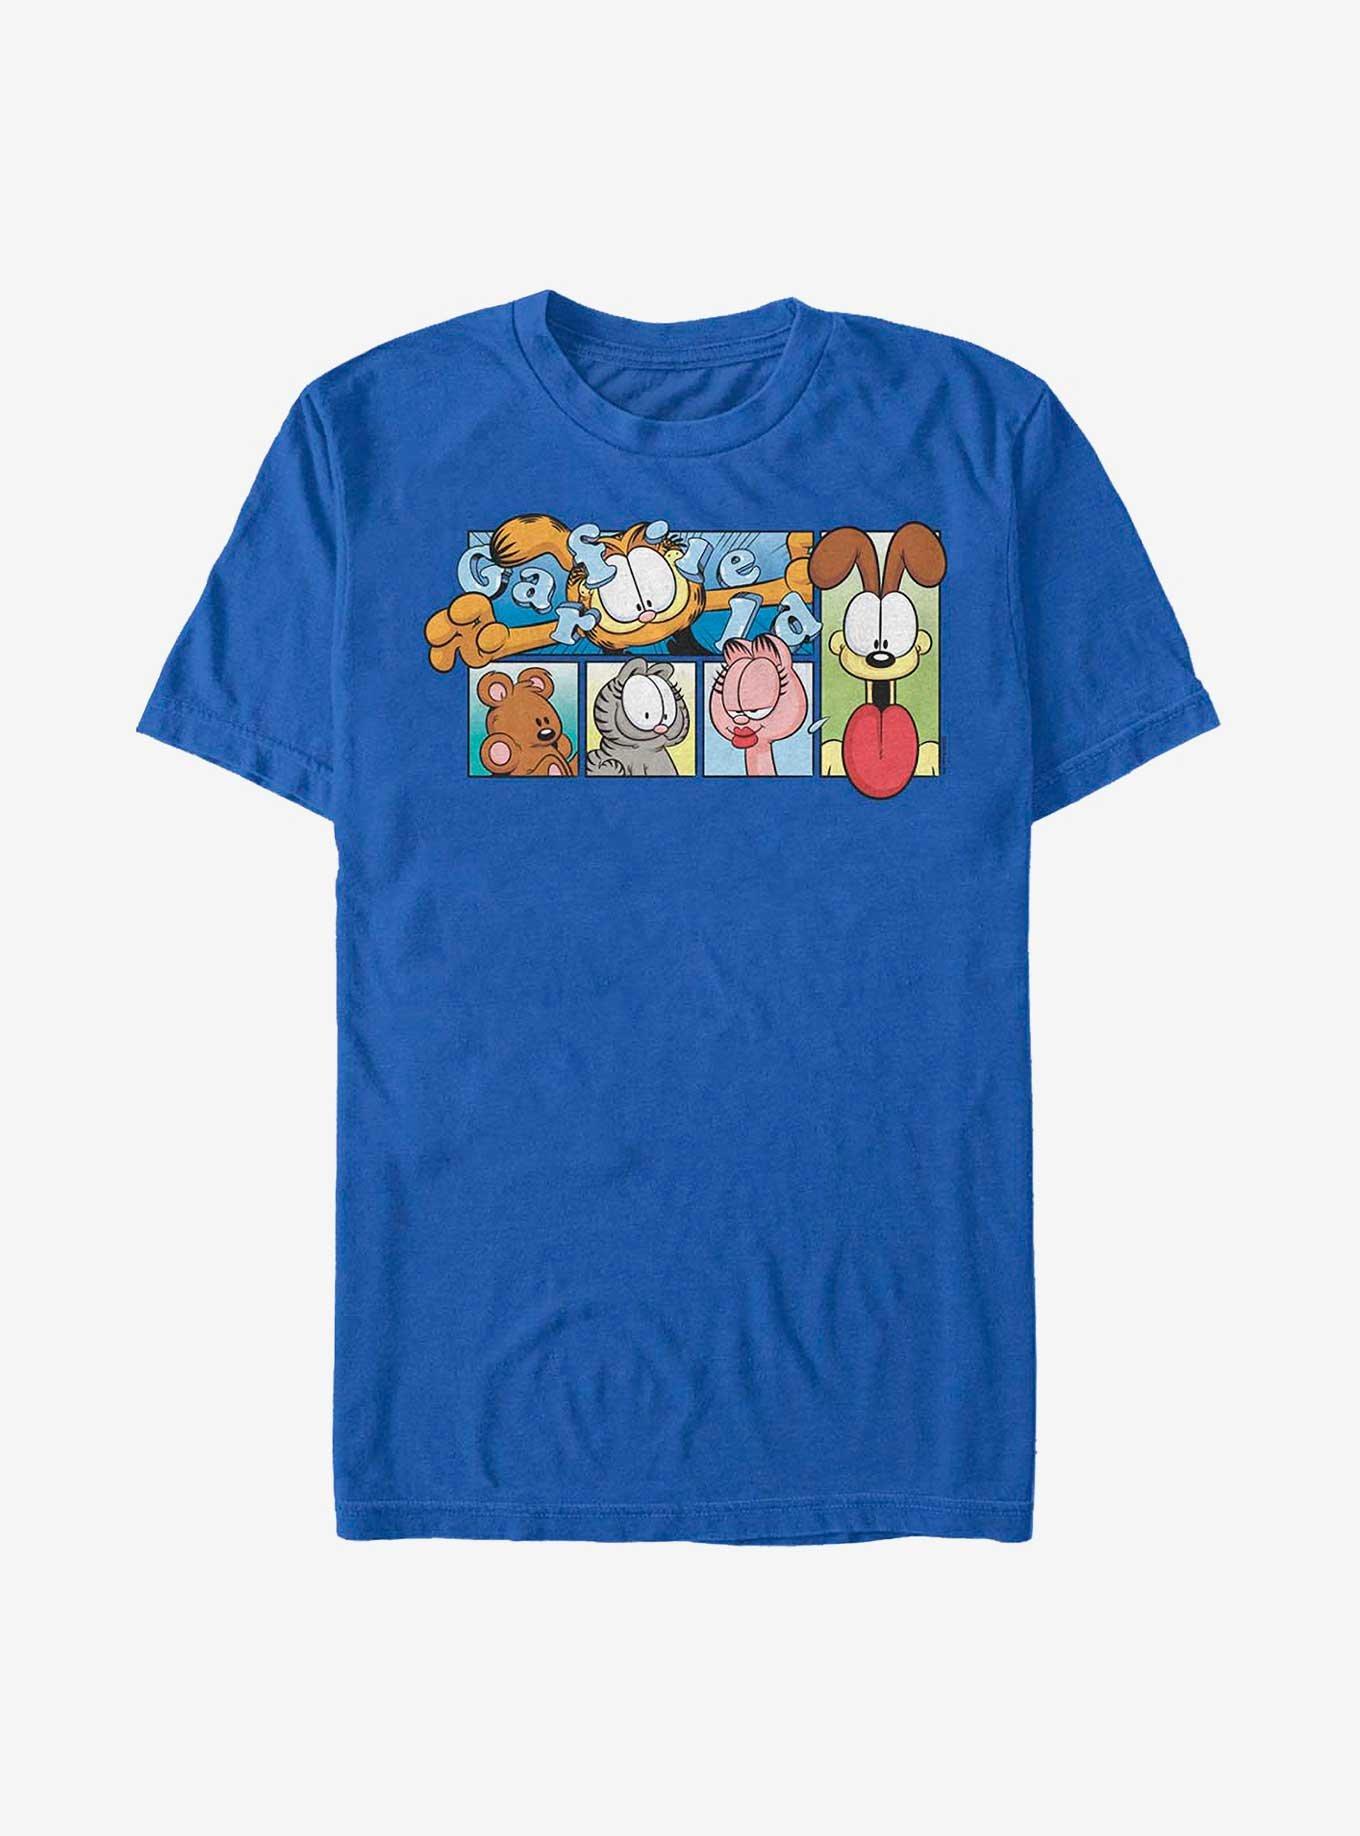 Garfield and Friends T-Shirt, ROYAL, hi-res